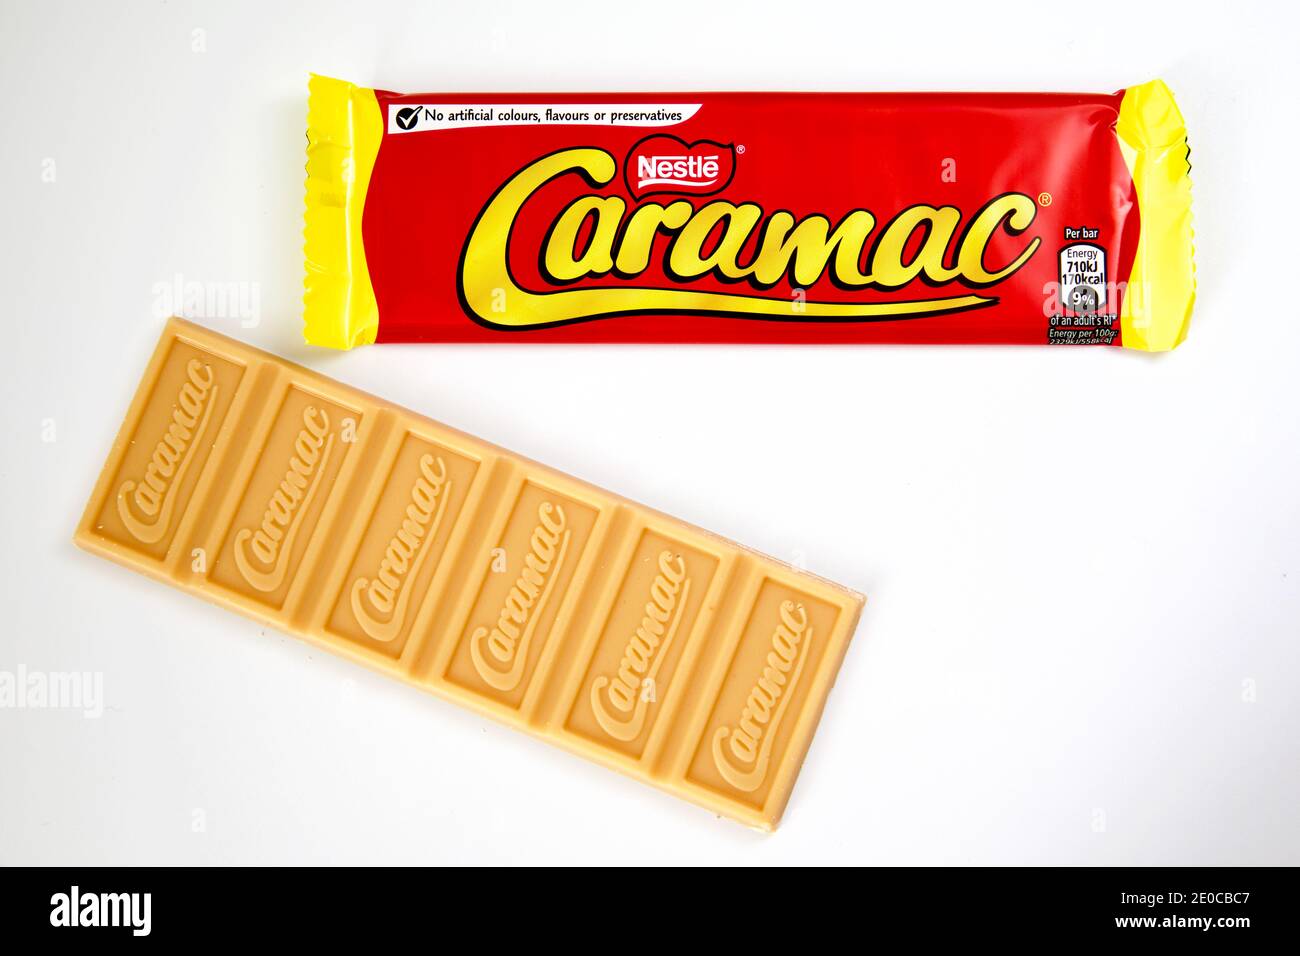 Nestlé Caramac Chocolate Bar Stock Photo